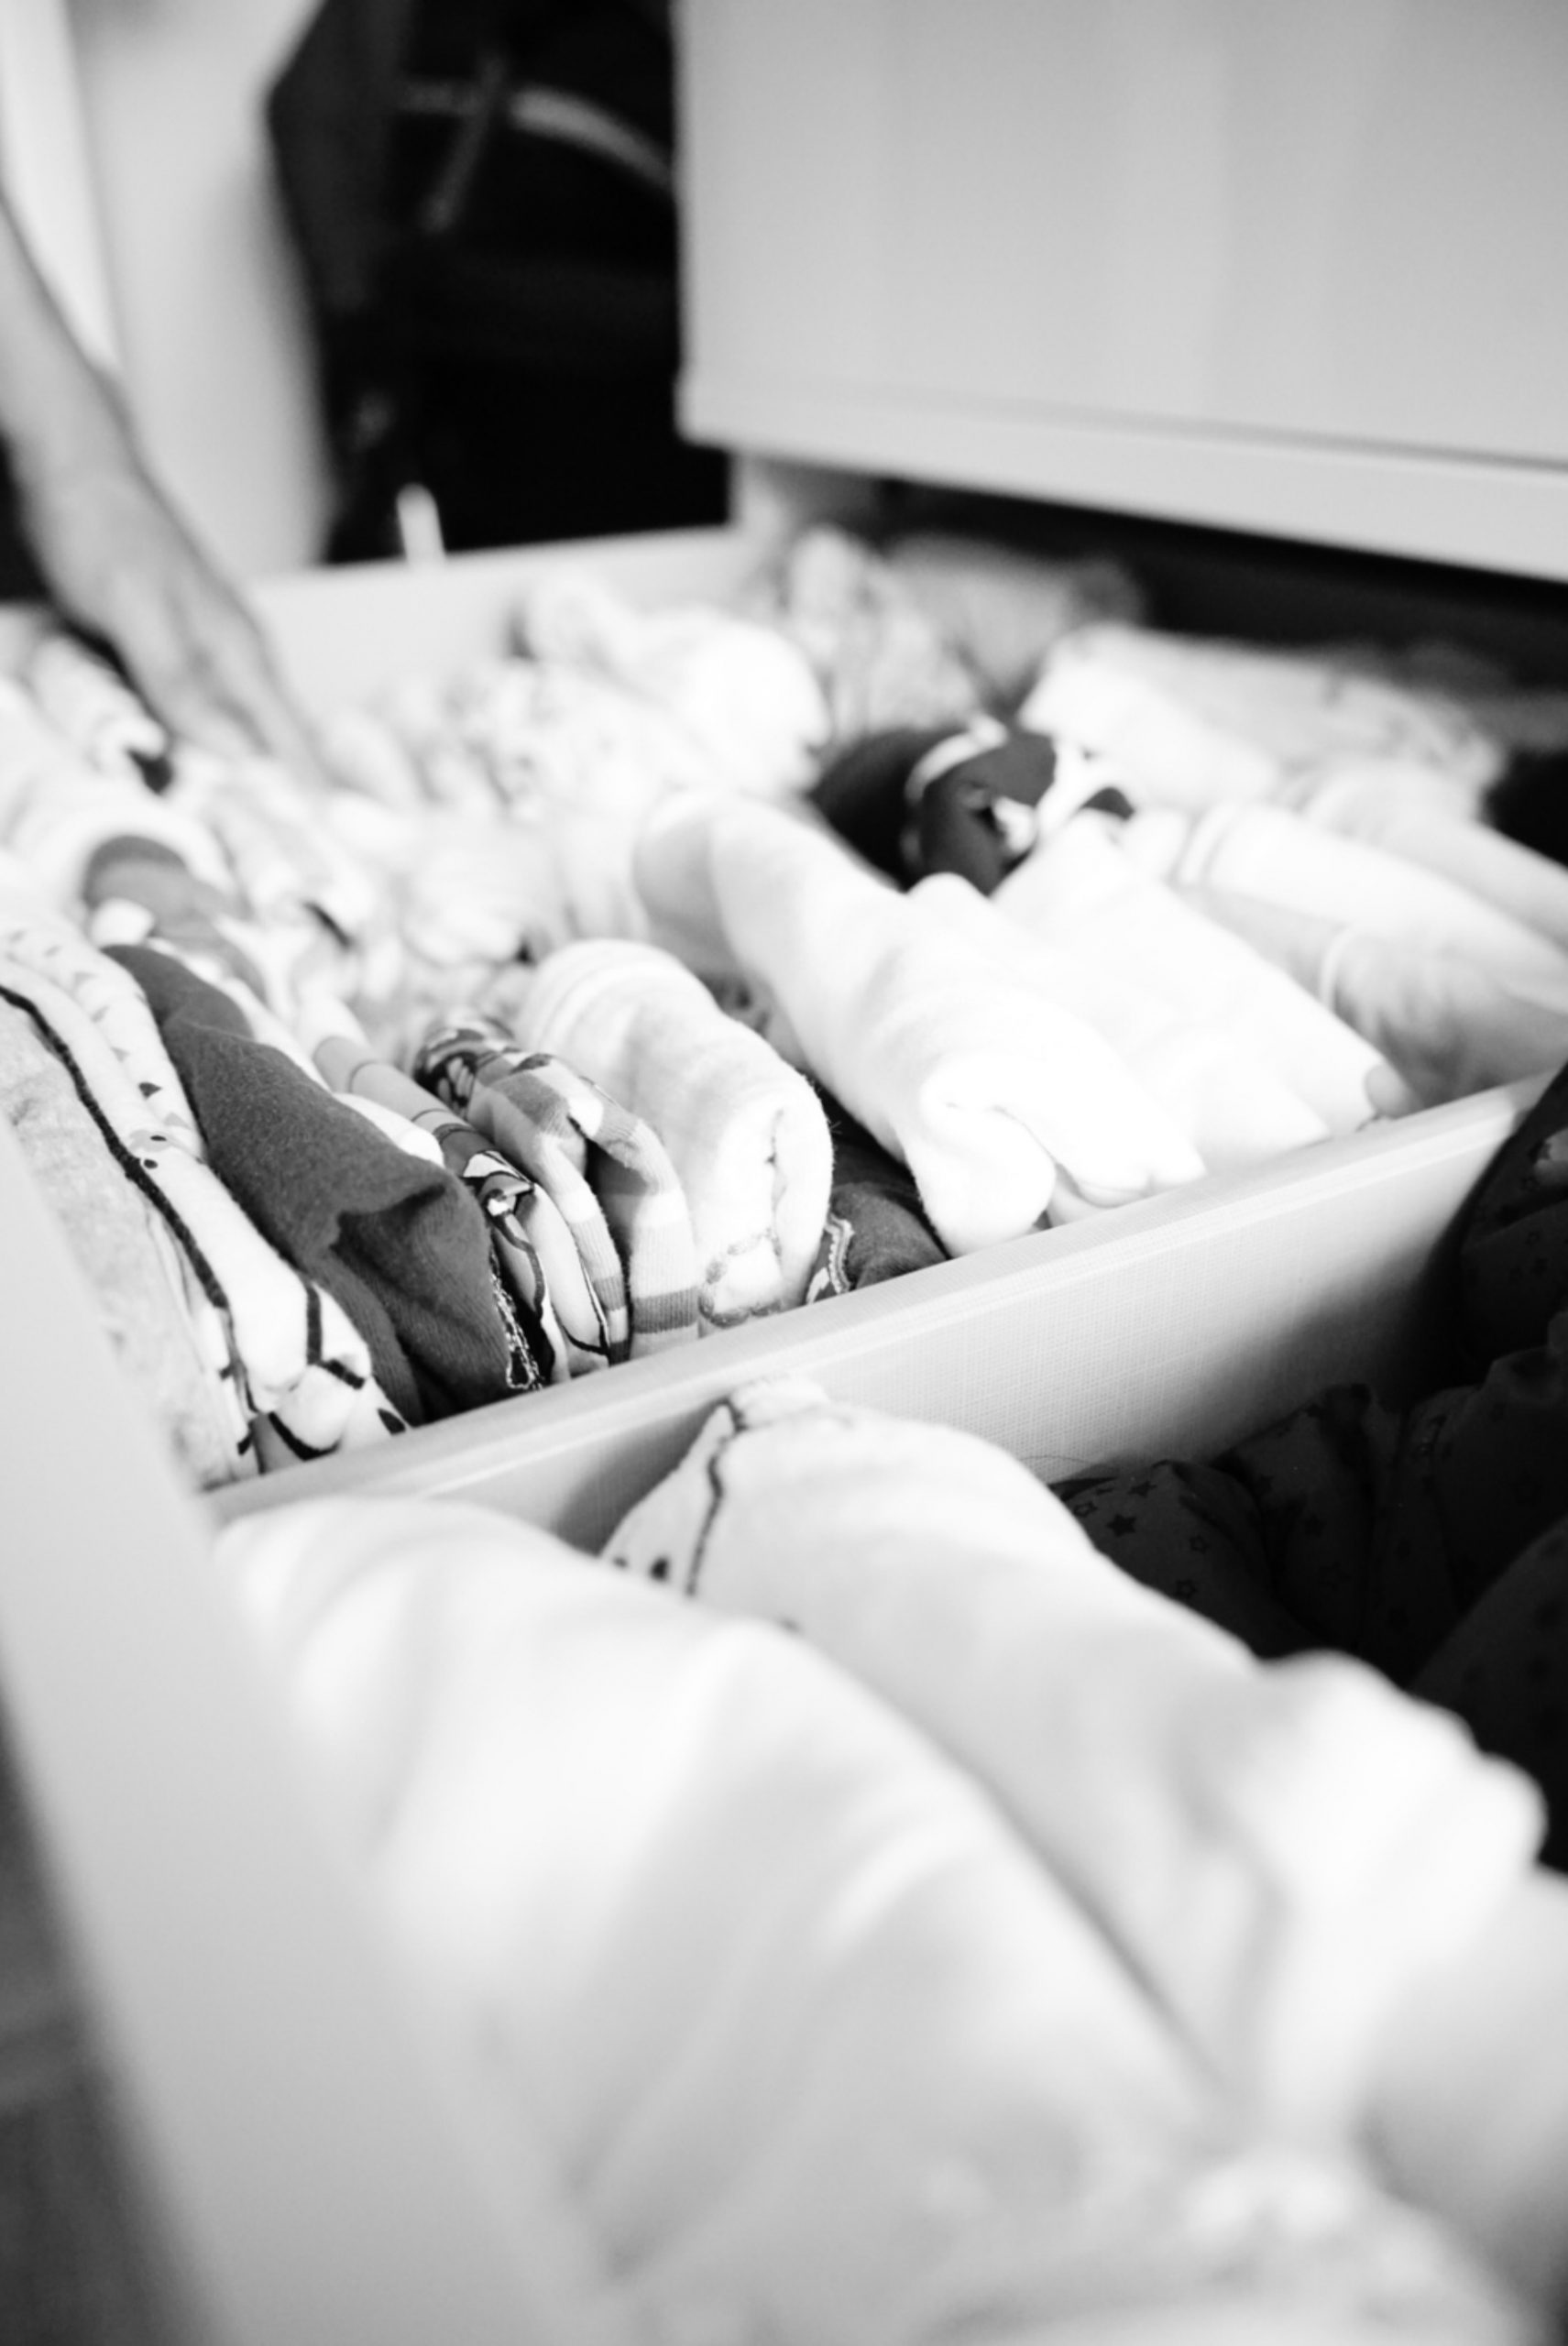 Schublade mit Kinderkleidung in der gerade jemand einräumt, schwarzweiß Foto